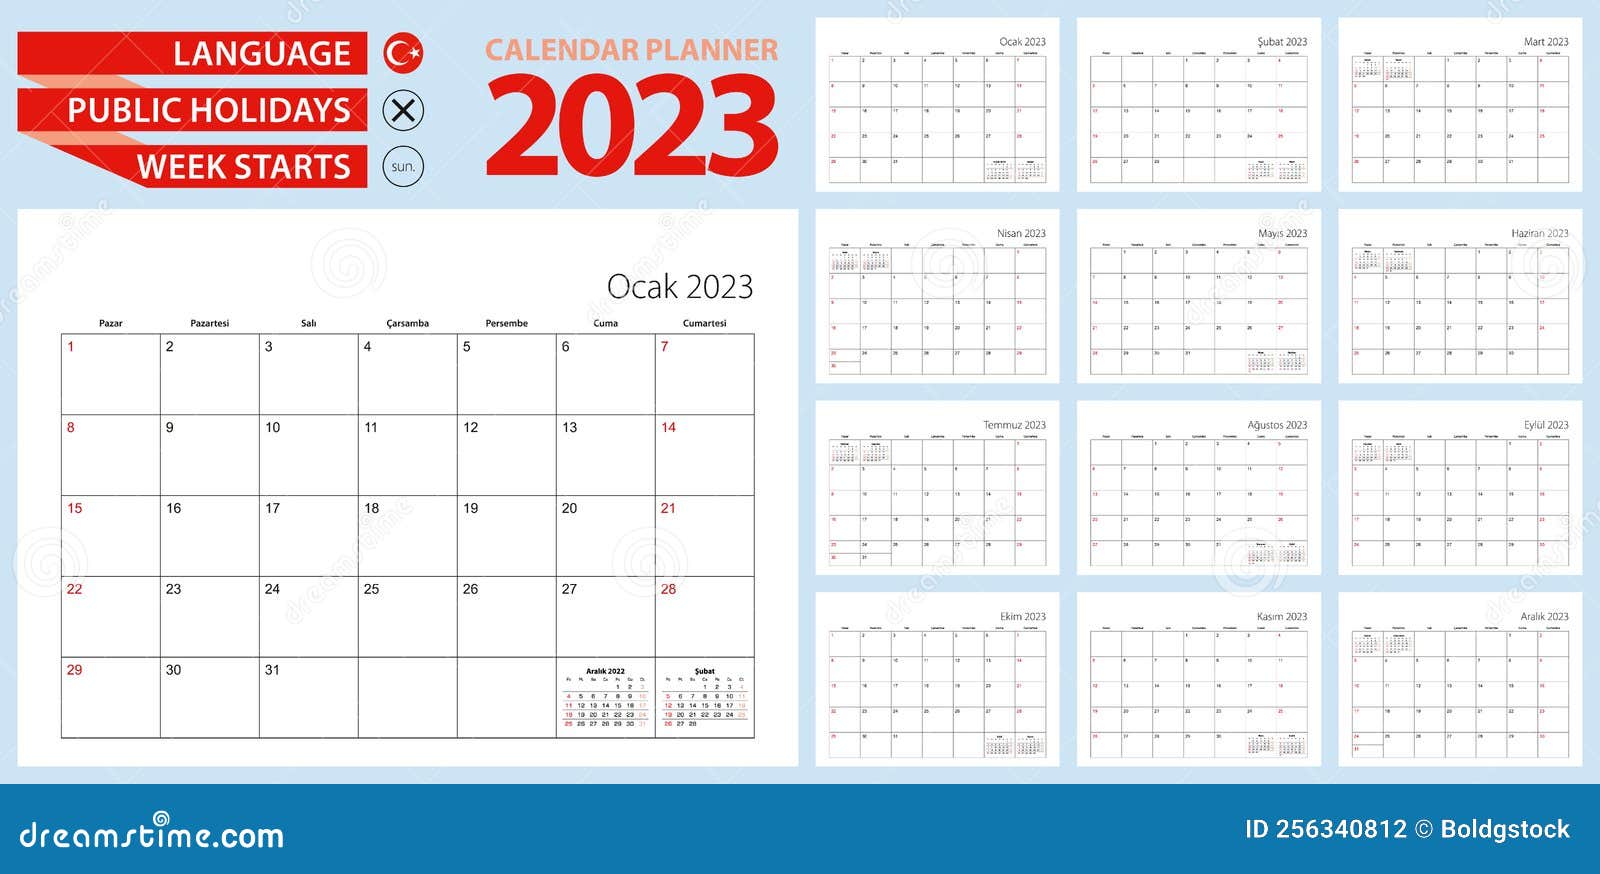 turkish-calendar-planner-for-2023-turkish-language-week-starts-from